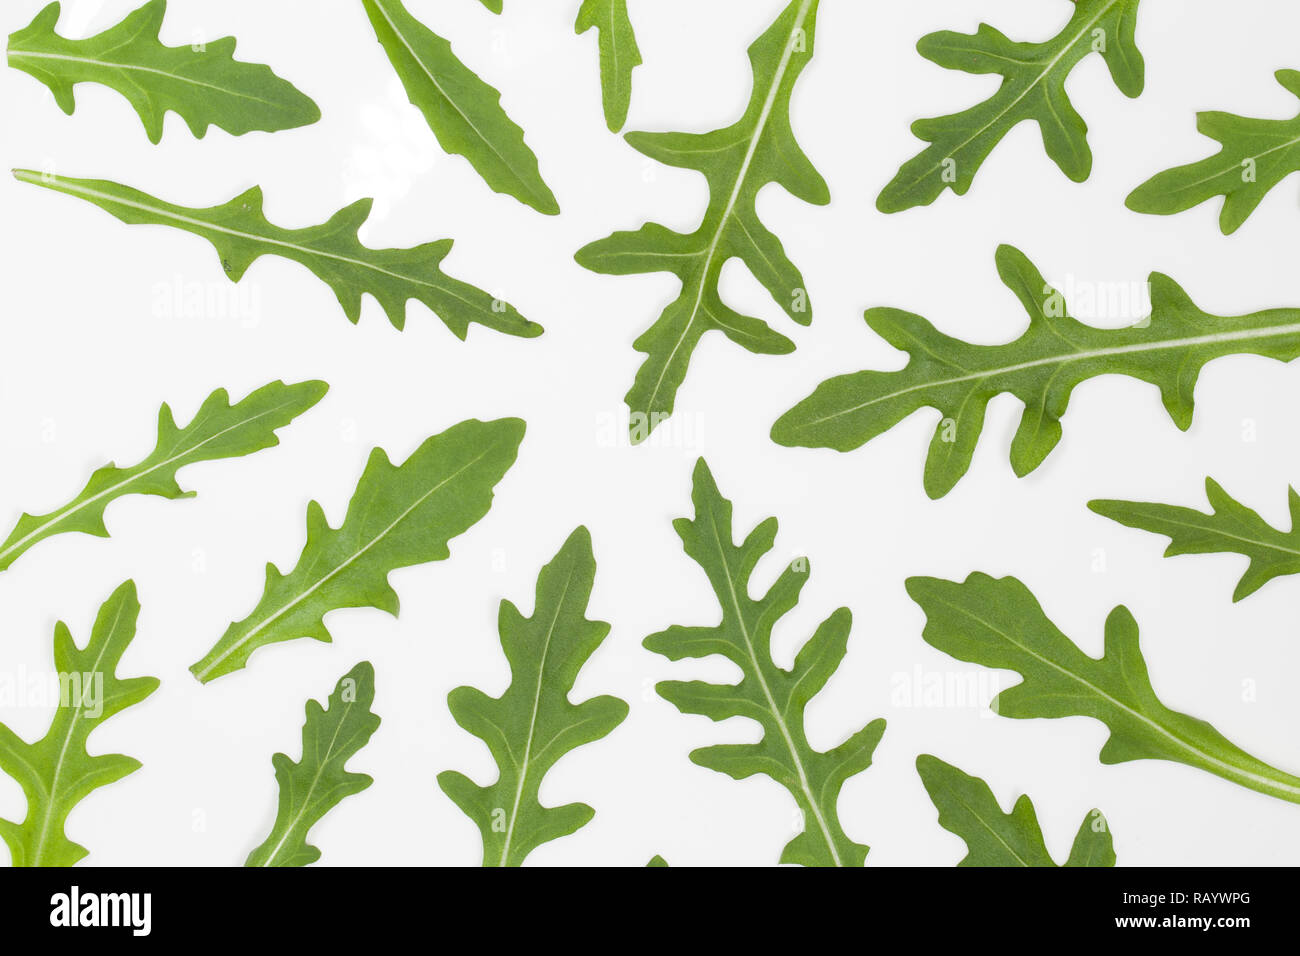 Makro Draufsicht Bild von frischen grünen Blätter der italienische Rucola auf weiße Platte isoliert. Rucola Salat. Organische gesunde Diät essen. Horizontale Farbe Foto Stockfoto